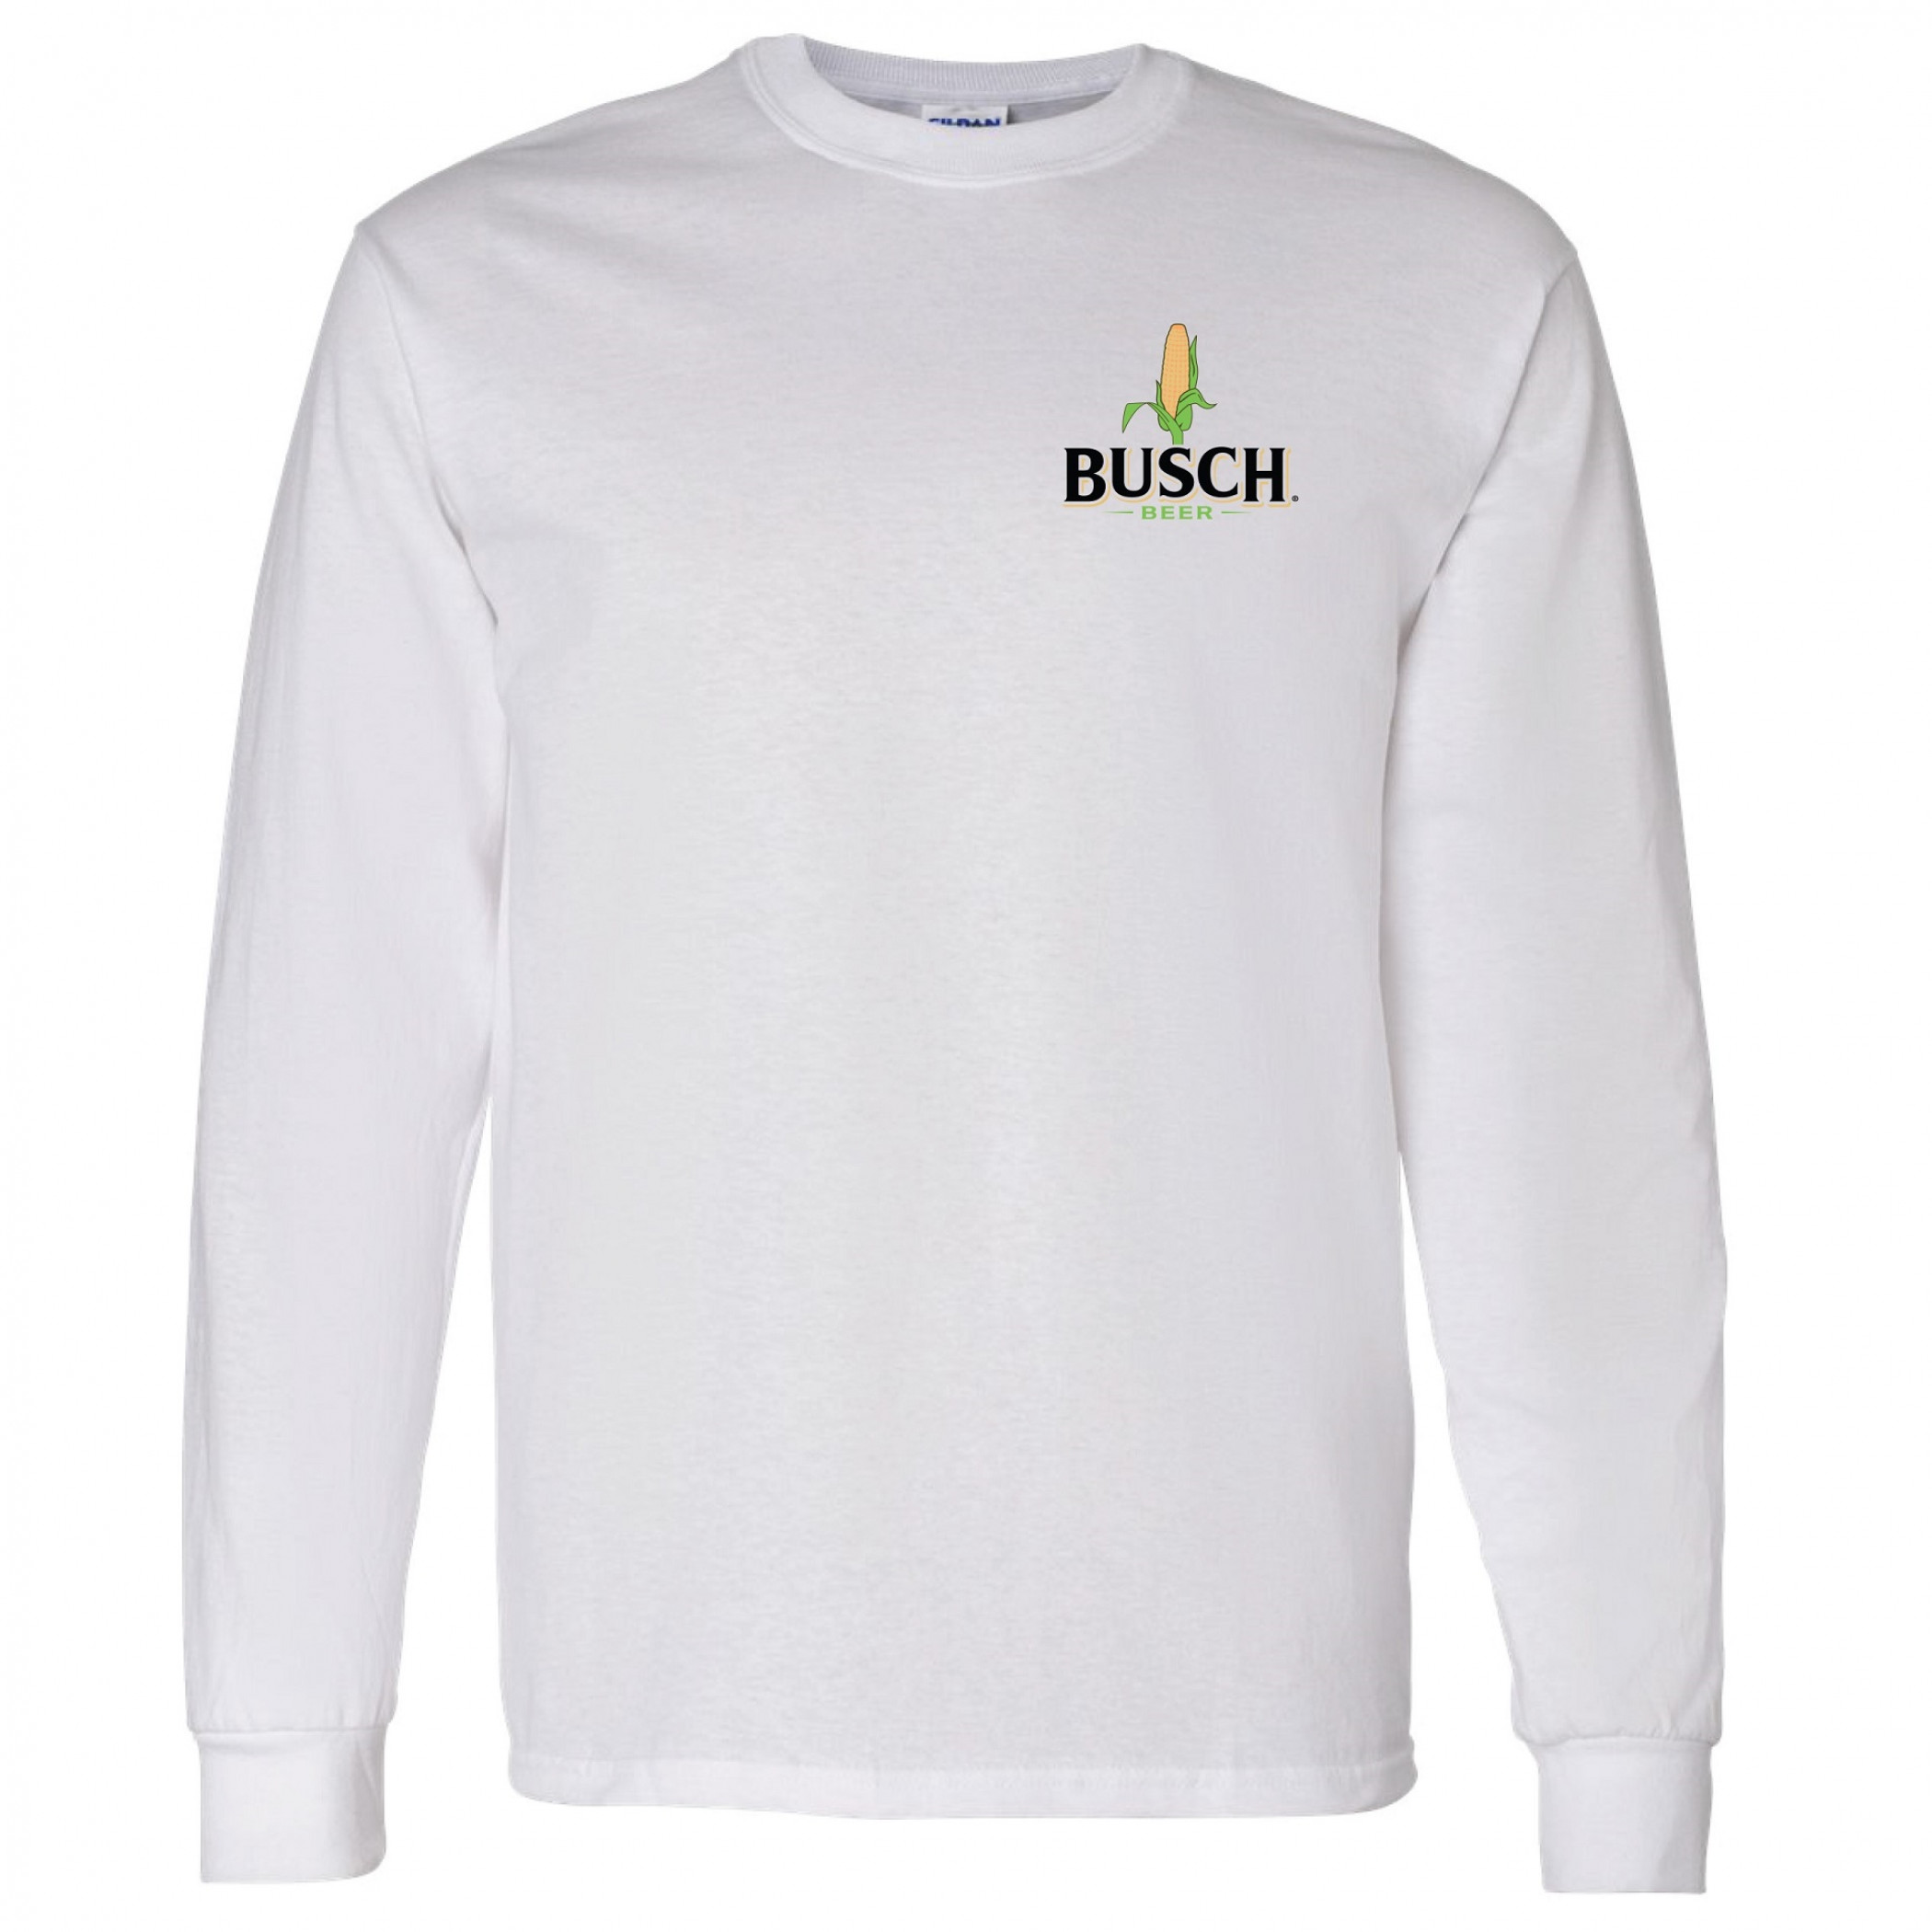 Busch Beer Corn Chest Logo Long Sleeve Shirt